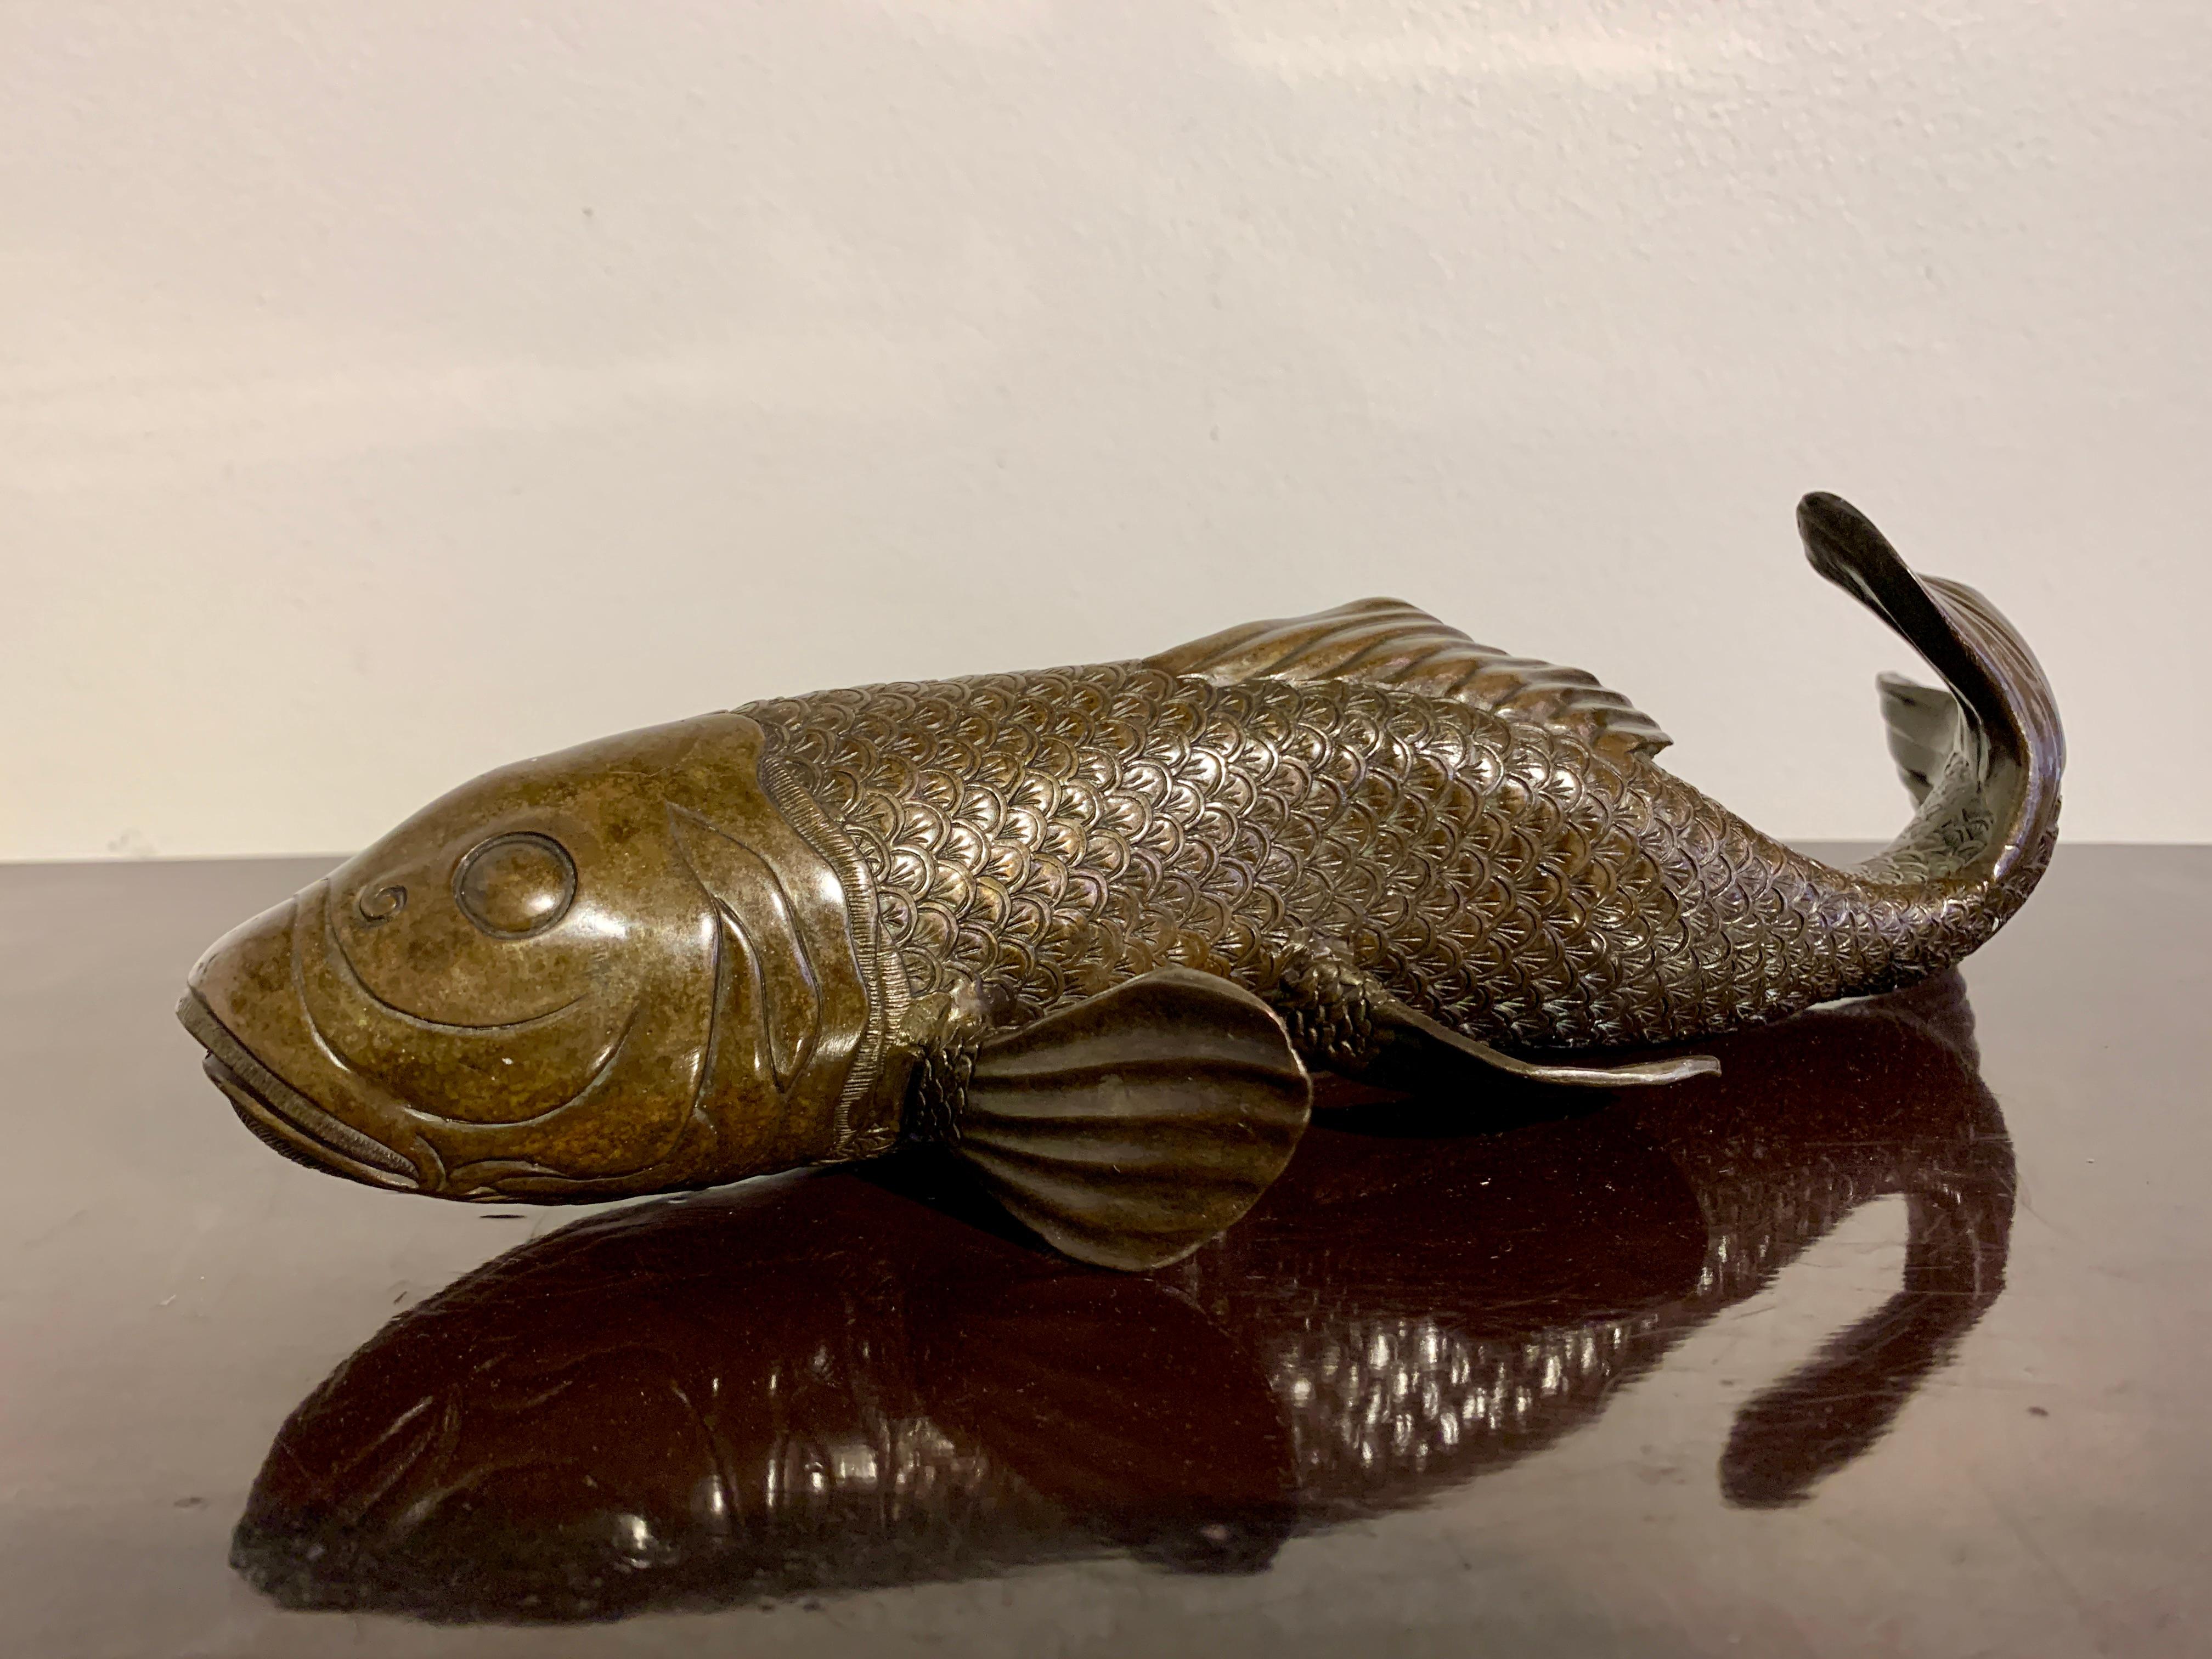 Elégant okimono japonais en bronze coulé représentant une carpe en train de nager, période Taisho (1912-1926), début du XXe siècle, Japon.

Le gracieux poisson est représenté de manière réaliste en mouvement, comme s'il nageait à contre-courant. Les